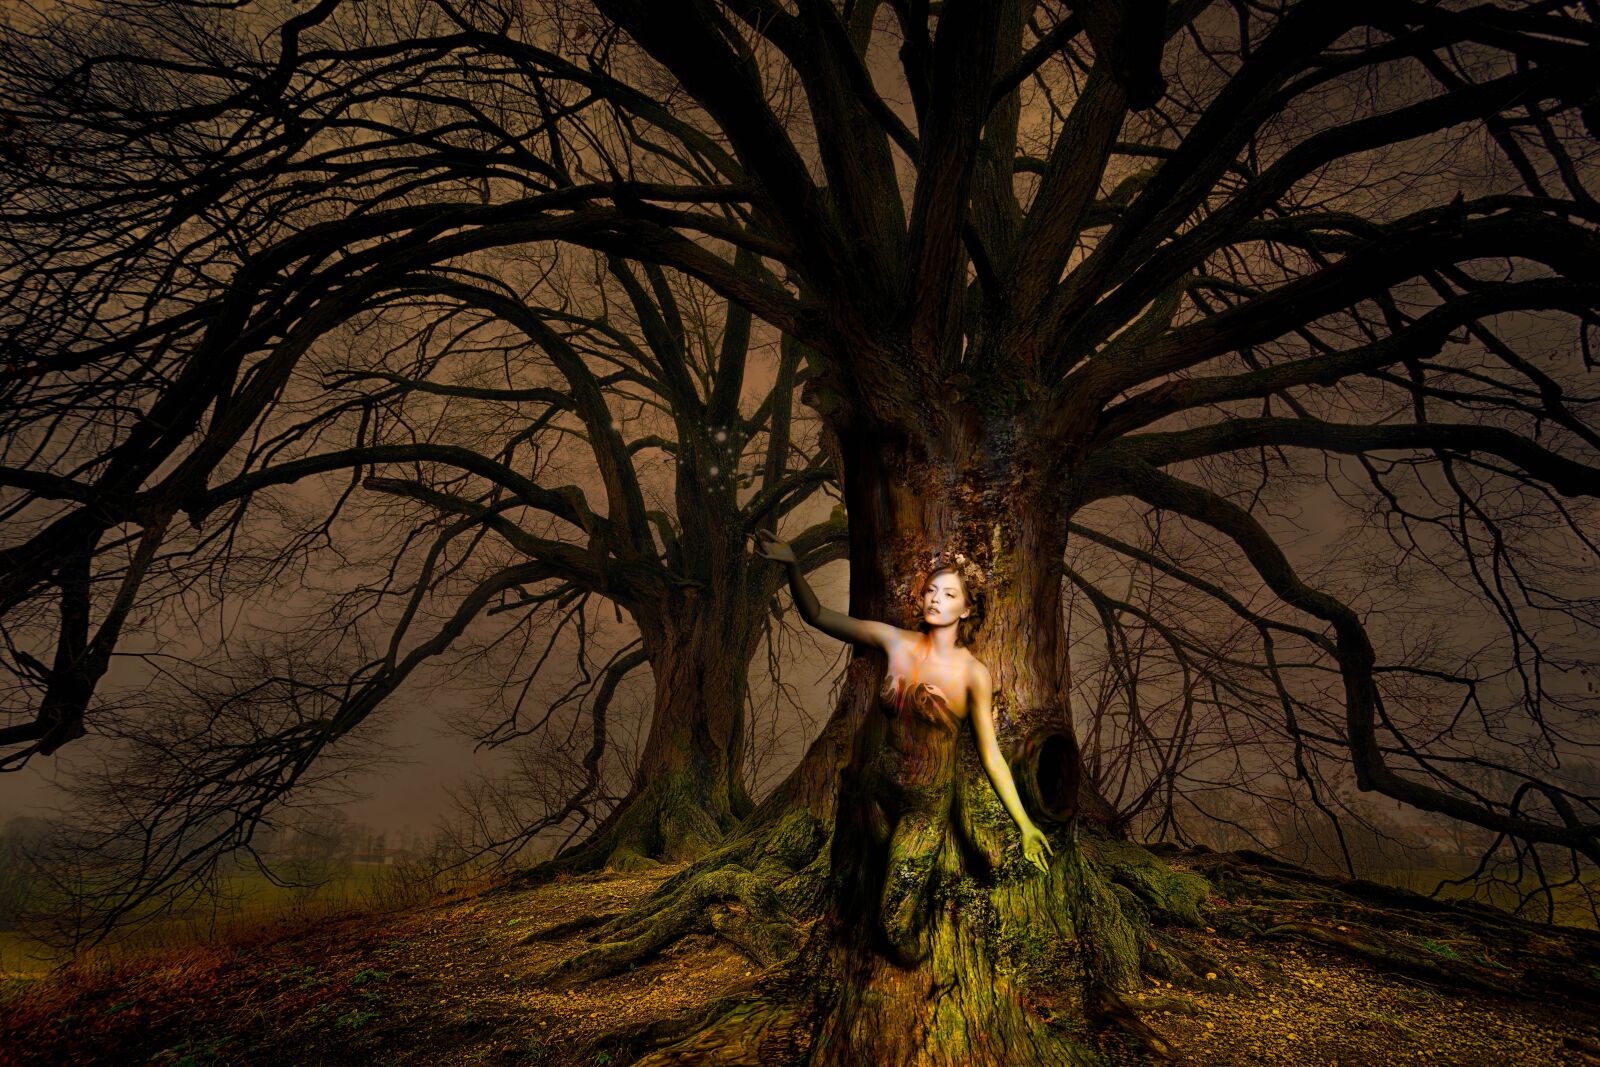 Sony a7 sample photo. Fantasy, woman, tree photography